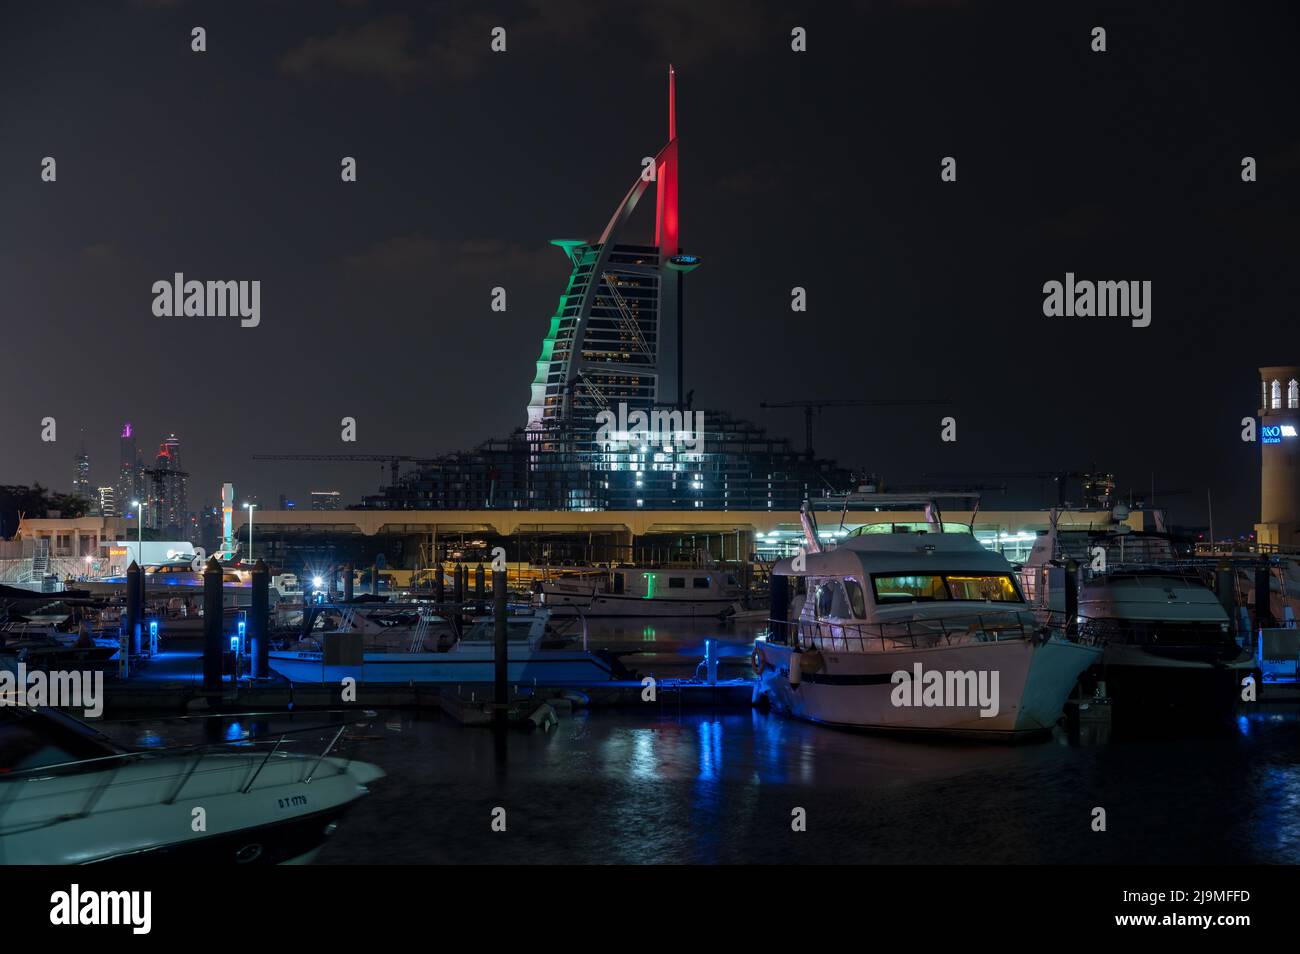 Vista notturna illuminata dell'hotel Burj al Arab, un iconico hotel a sette stelle a Dubai, insieme alle navi nel molo catturate dal Burj al Arab Foto Stock